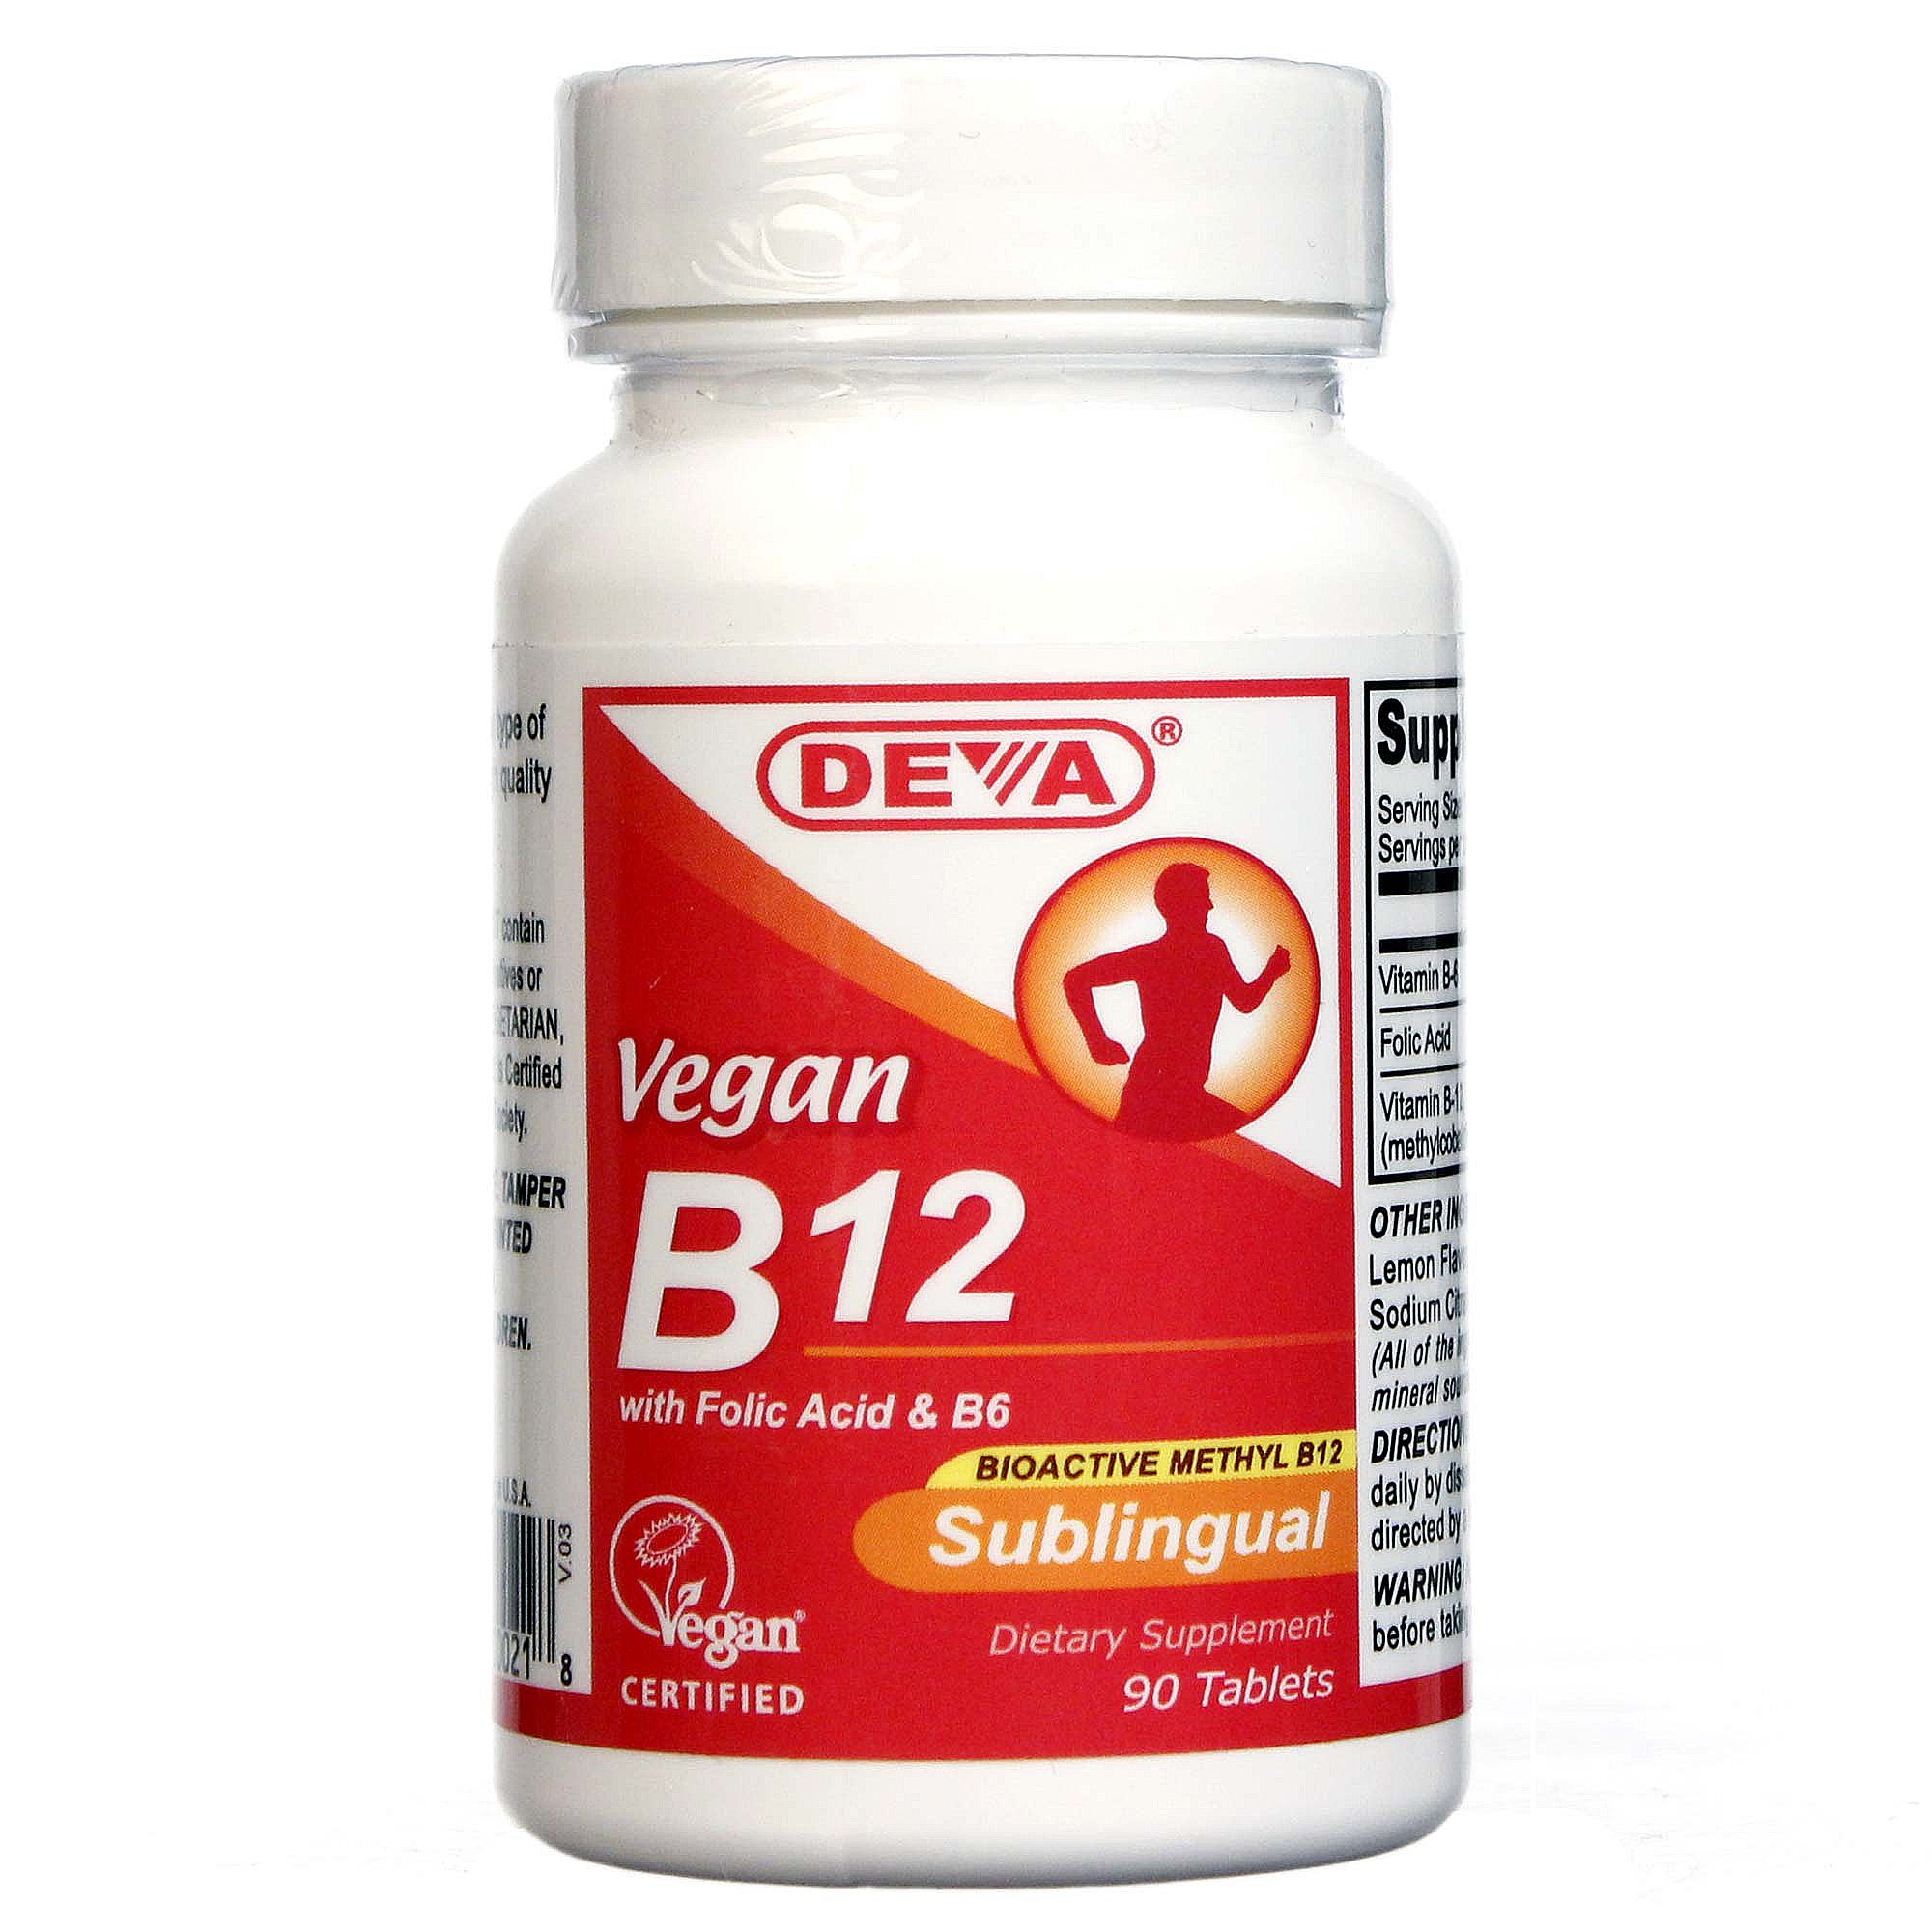 Где Можно Купить Витамин Б 12